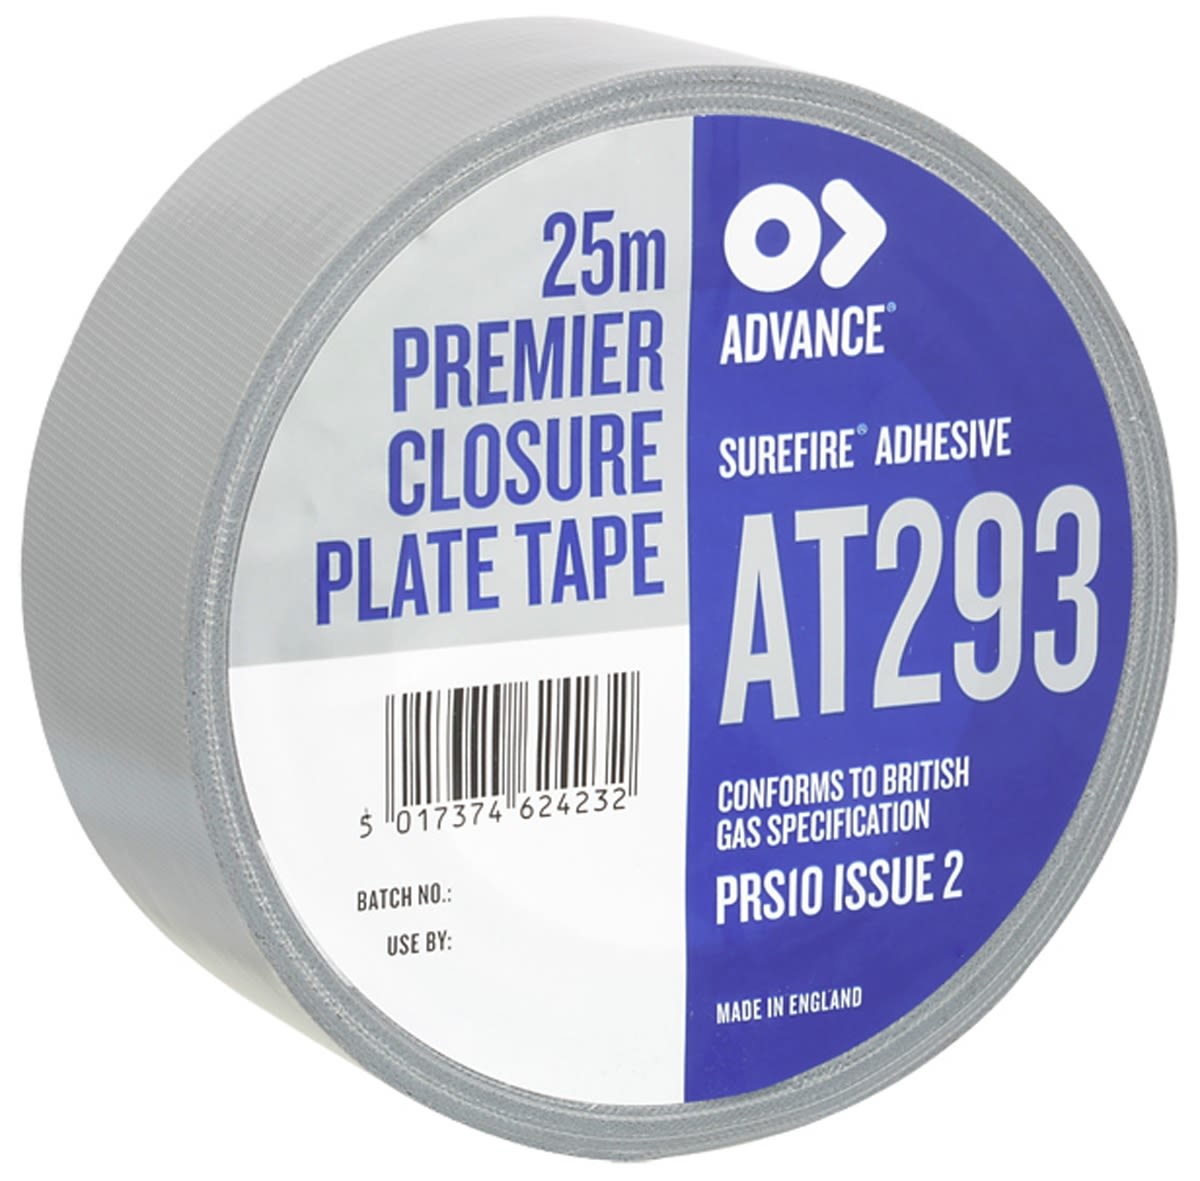 Advance Tapes szövet ragasztószalag, 25m x 50mm x 0.3mm, Ezüst AT293 Closure Plate Tape